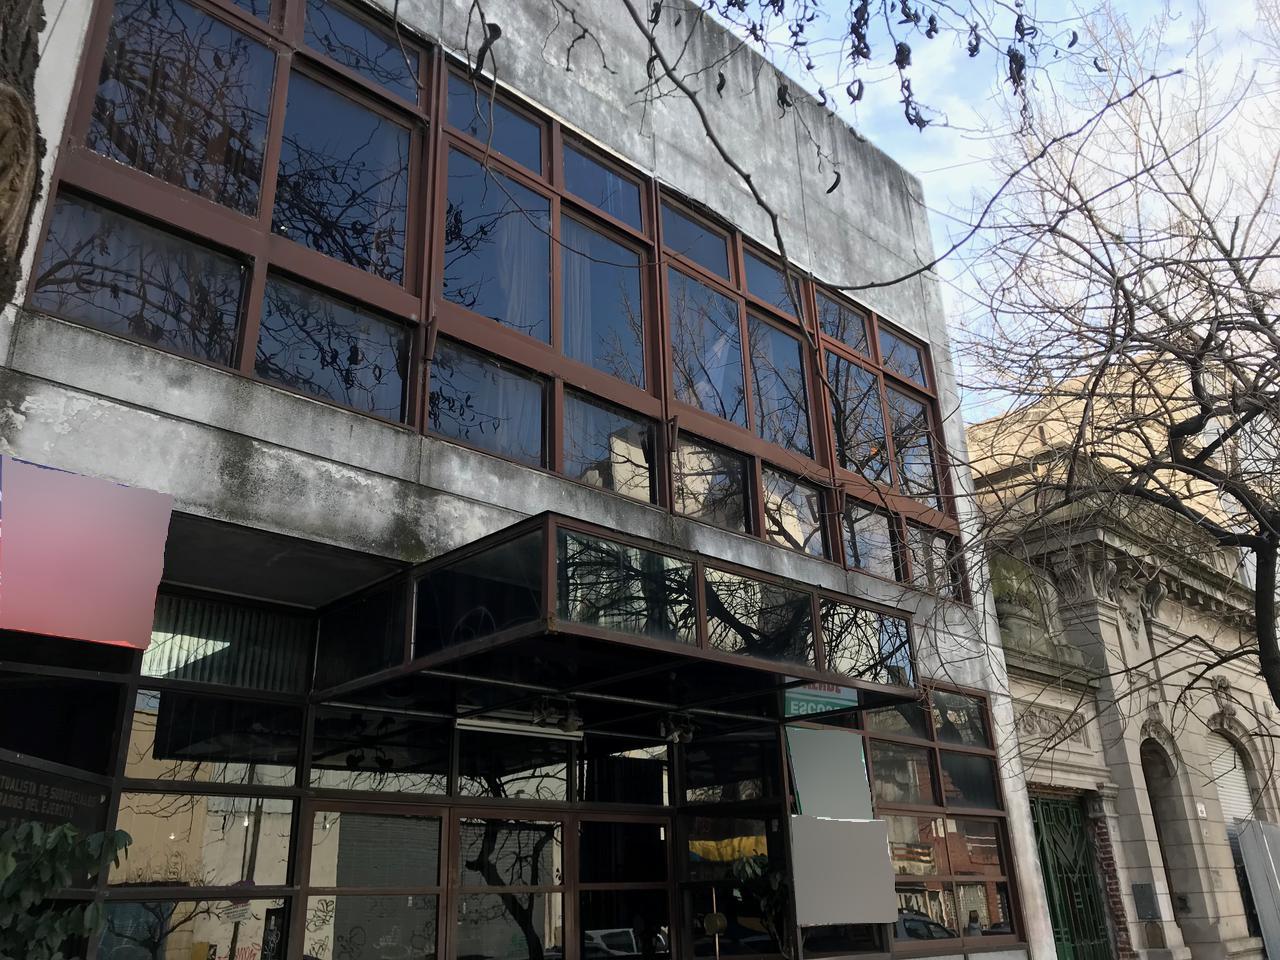 Edificio Comercial en venta en La Plata calle 2 e/ 43 y 44 Dacal Bienes Raices